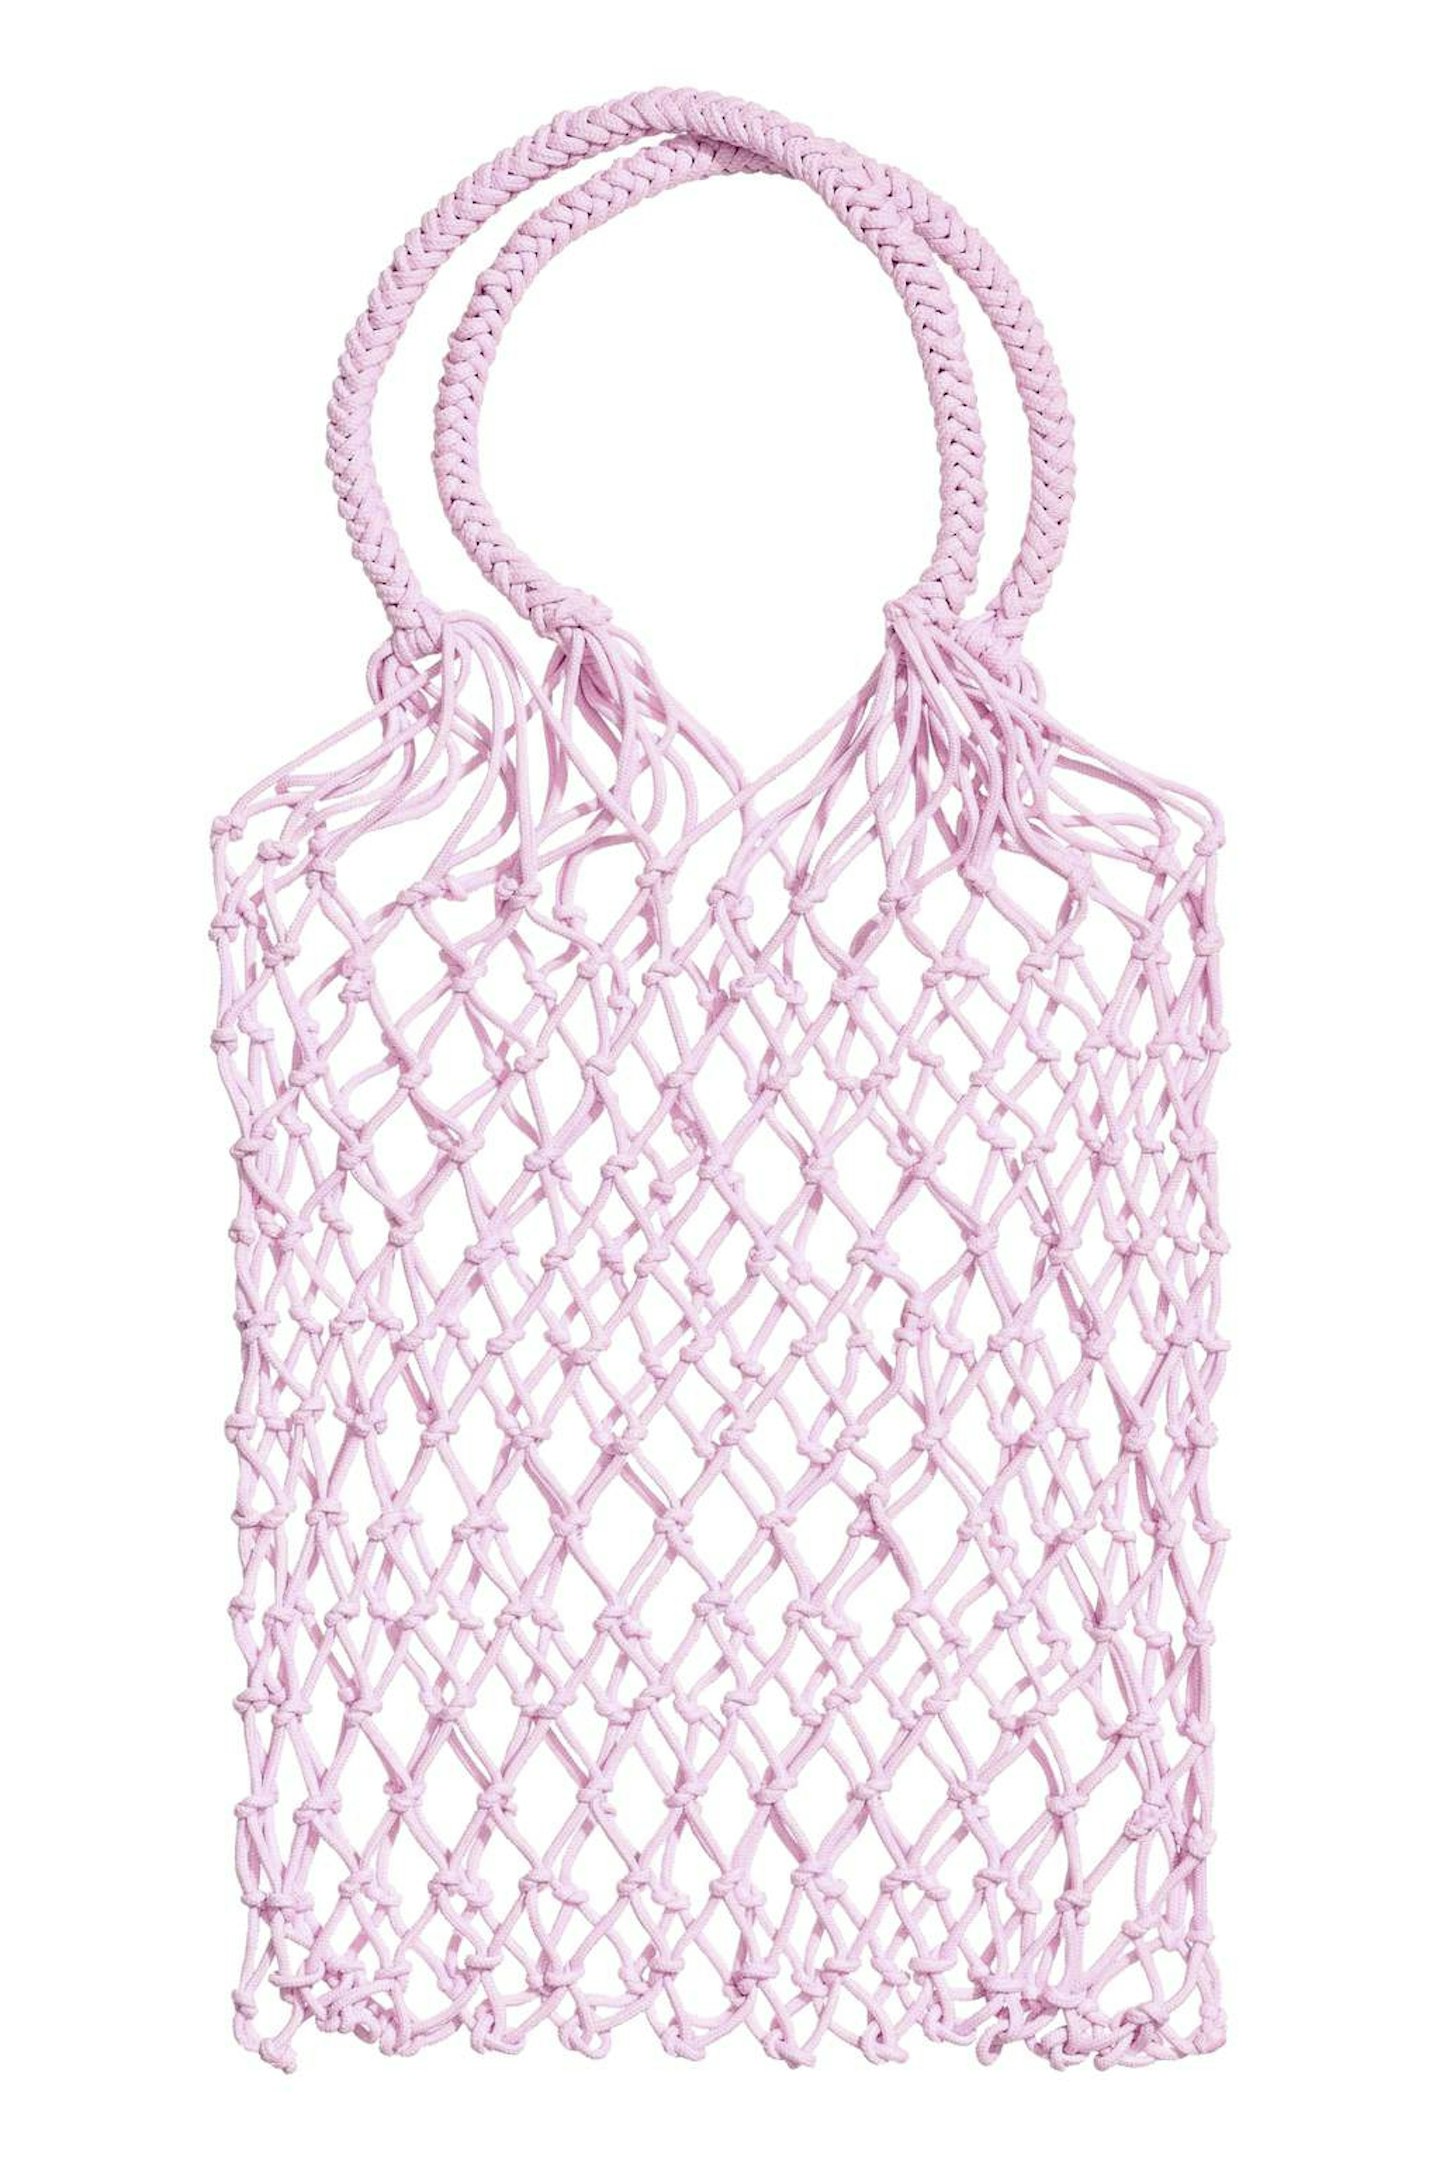 h&m-string-bag-pink-fashion